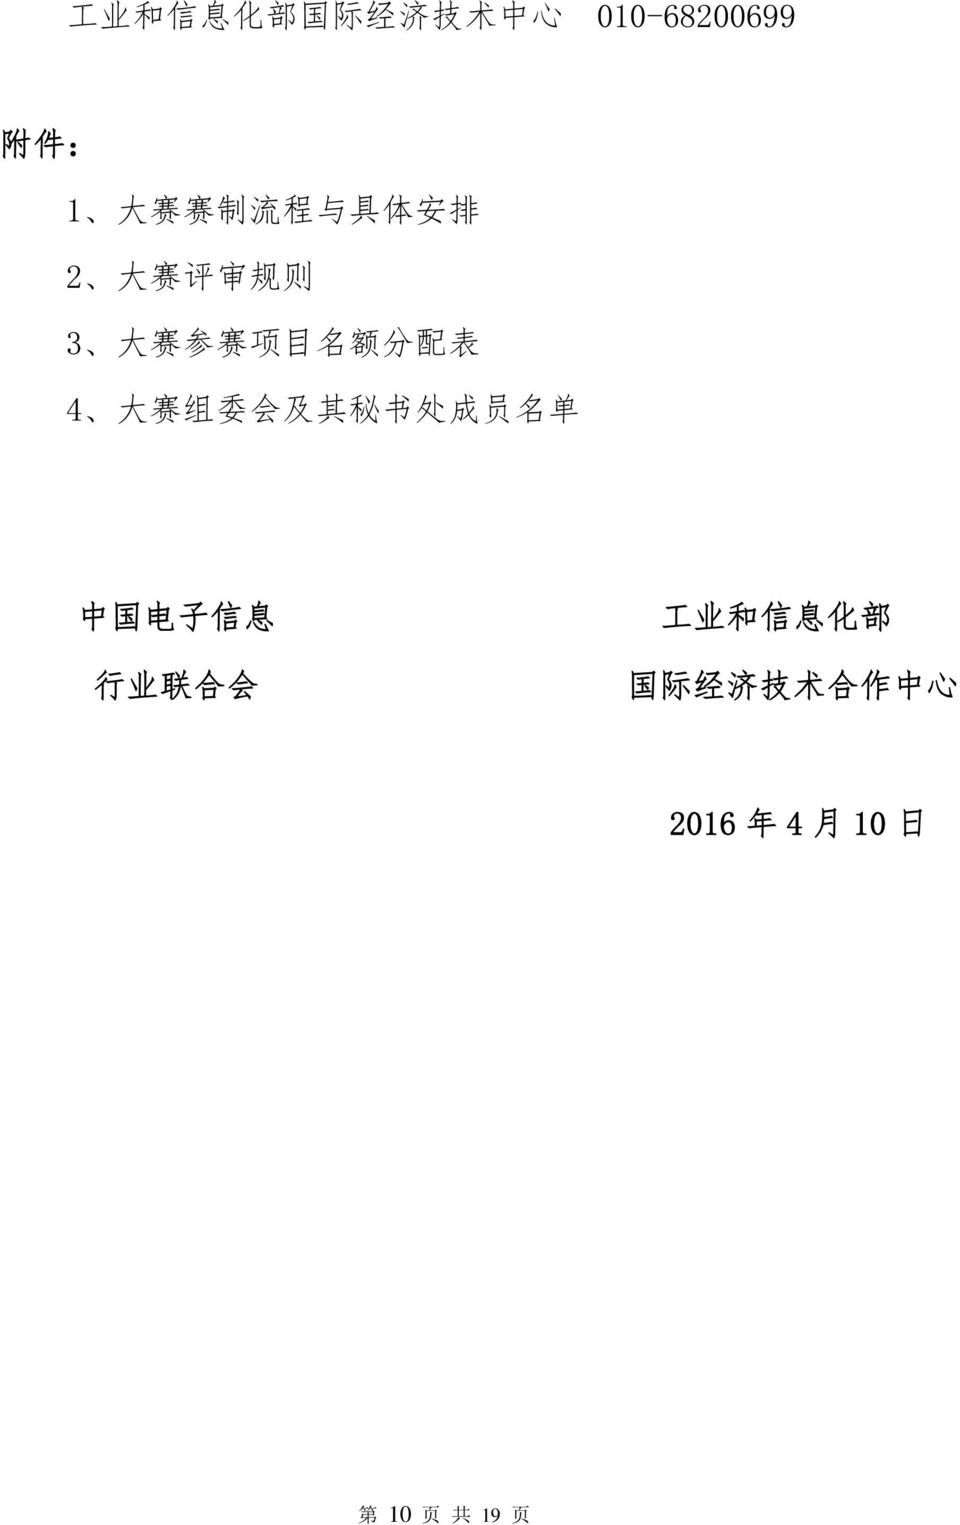 大 赛 组 委 会 及 其 秘 书 处 成 员 名 单 中 国 电 子 信 息 行 业 联 合 会 工 业 和